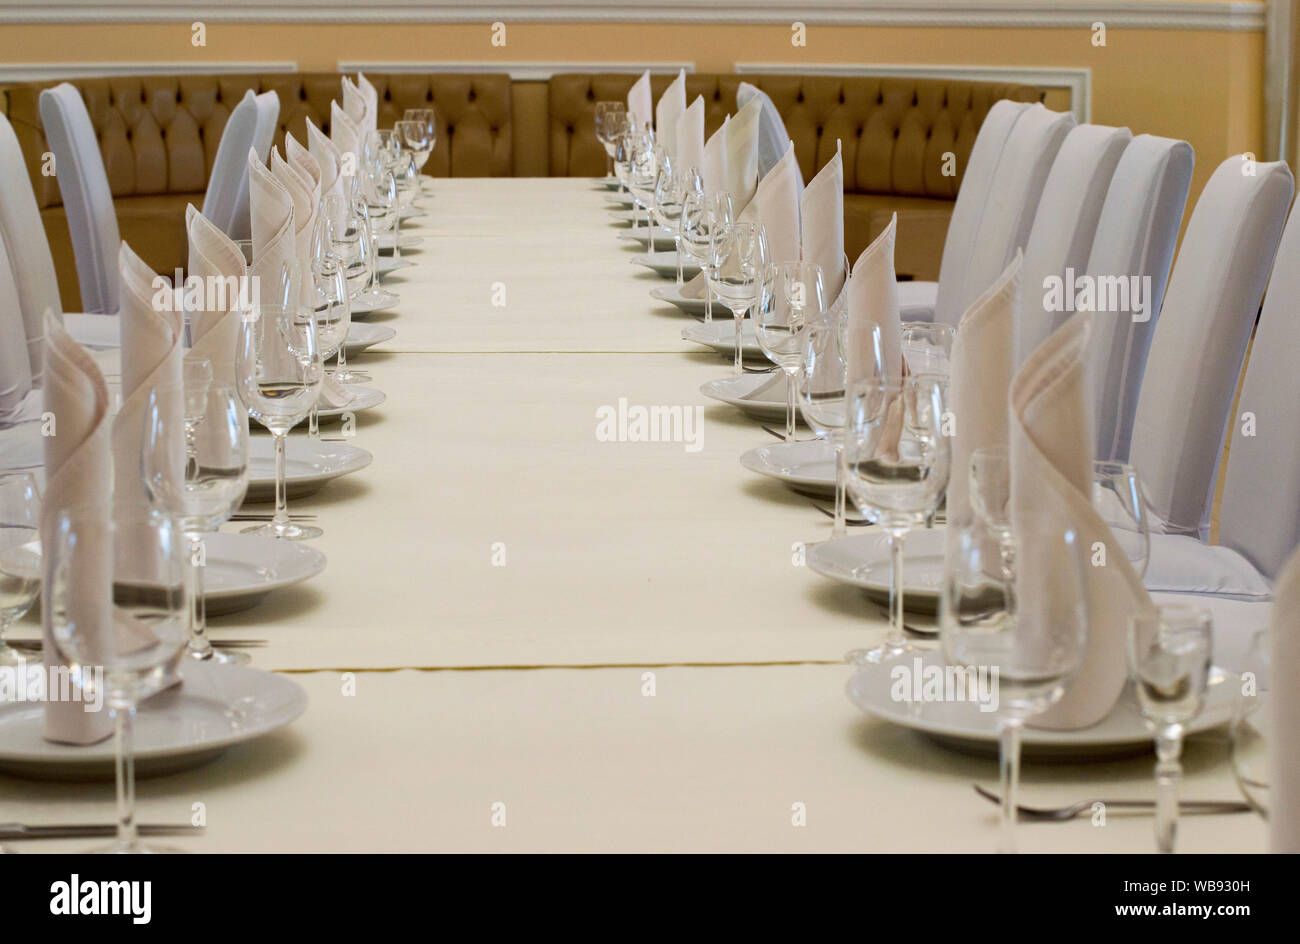 NIZHNY NOVGOROD, RUSSIA October 30, 2016: Banquet table in the restaurant. Nizhny Novgorod. Stock Photo